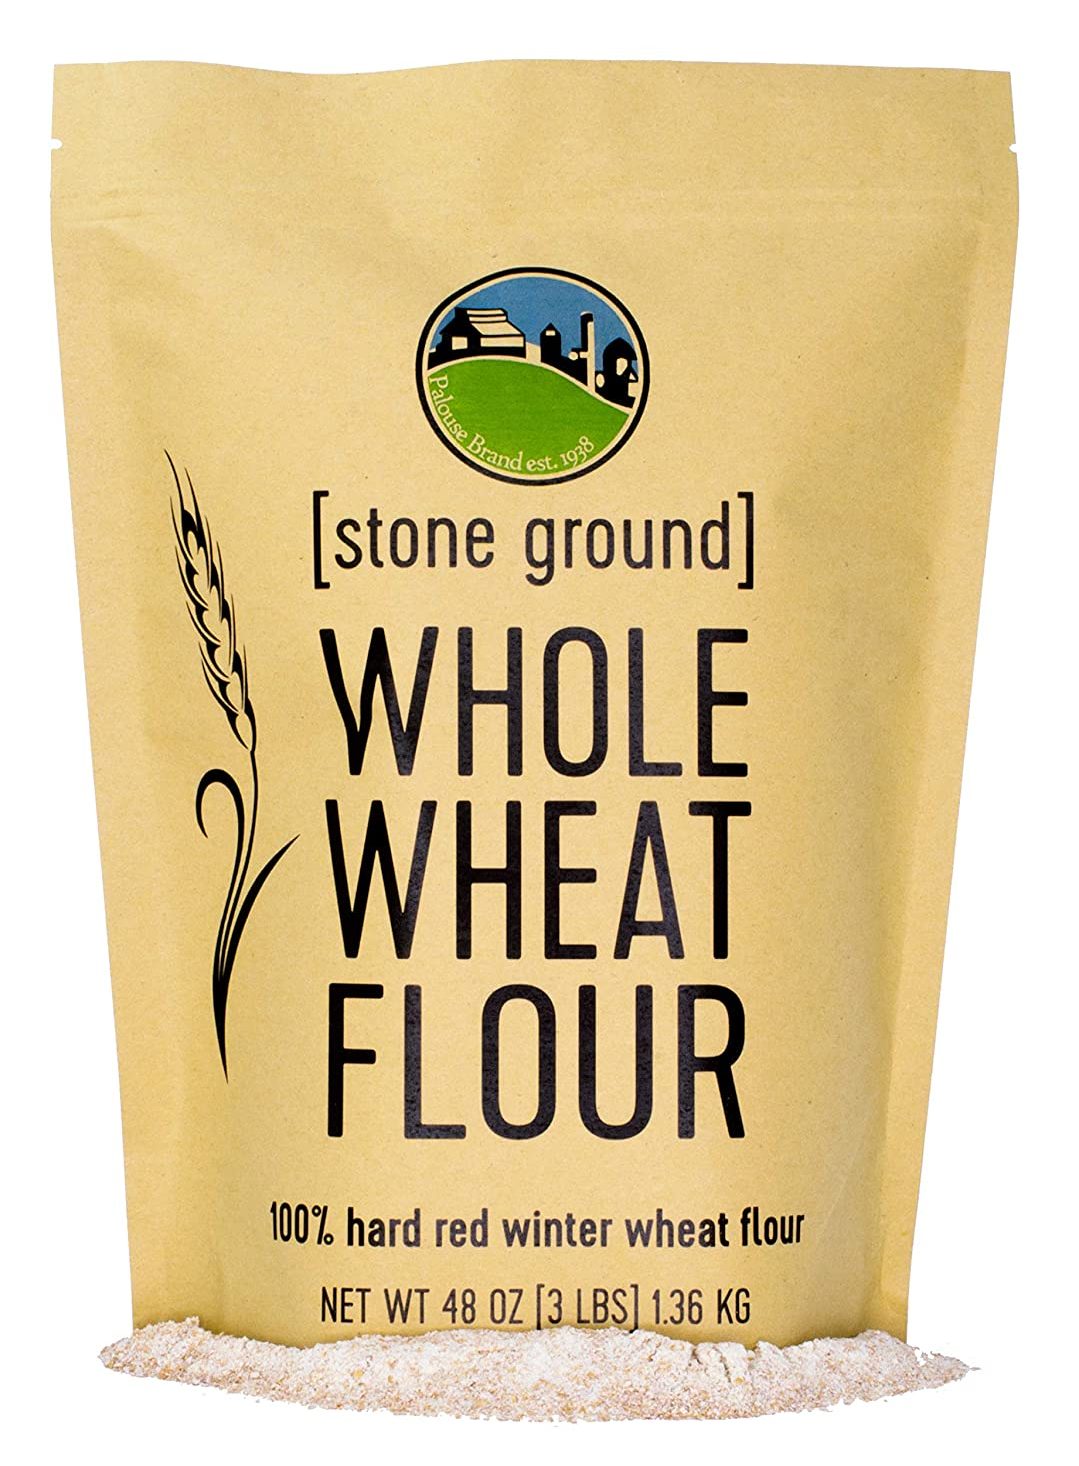 Outra alternativa saudável à farinha de trigo é a farinha de trigo integral.